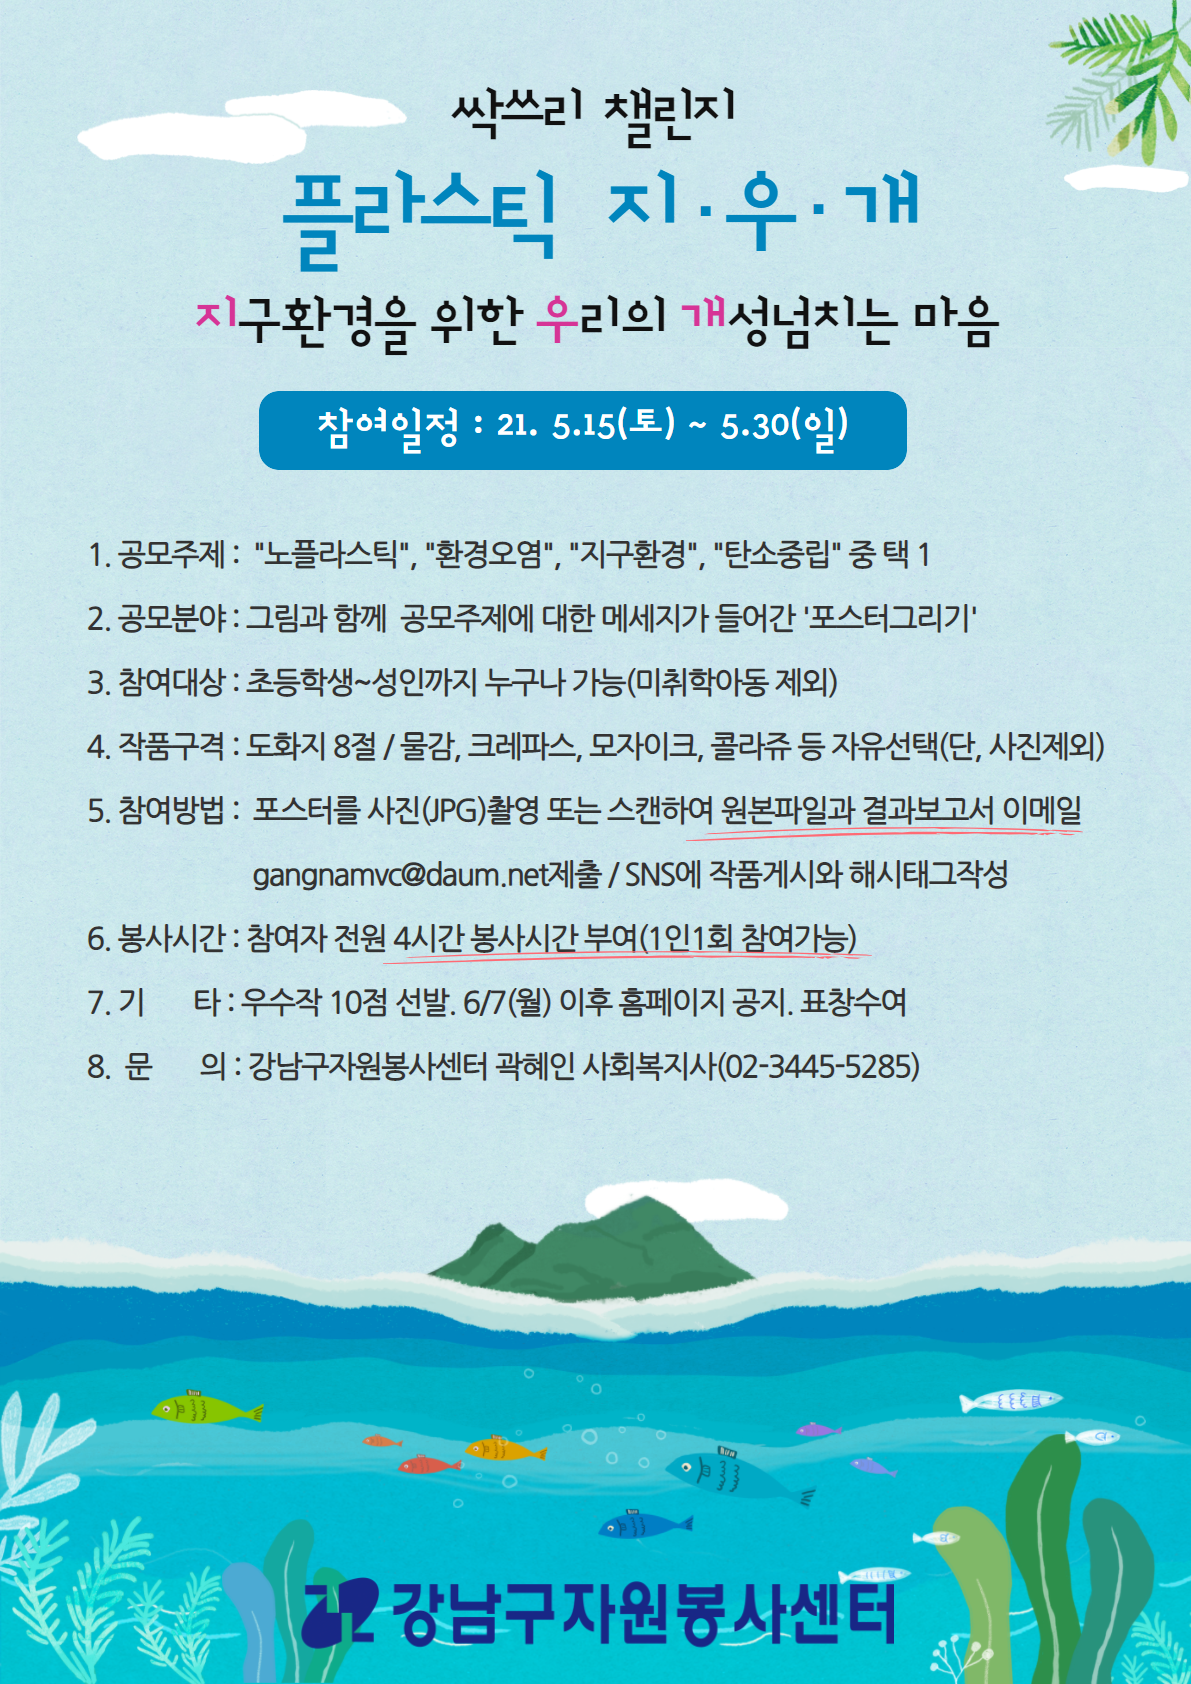 5.15~30, 온택트 캠페인 ‘플라스틱 지우개 챌린지’ 참여자 모집